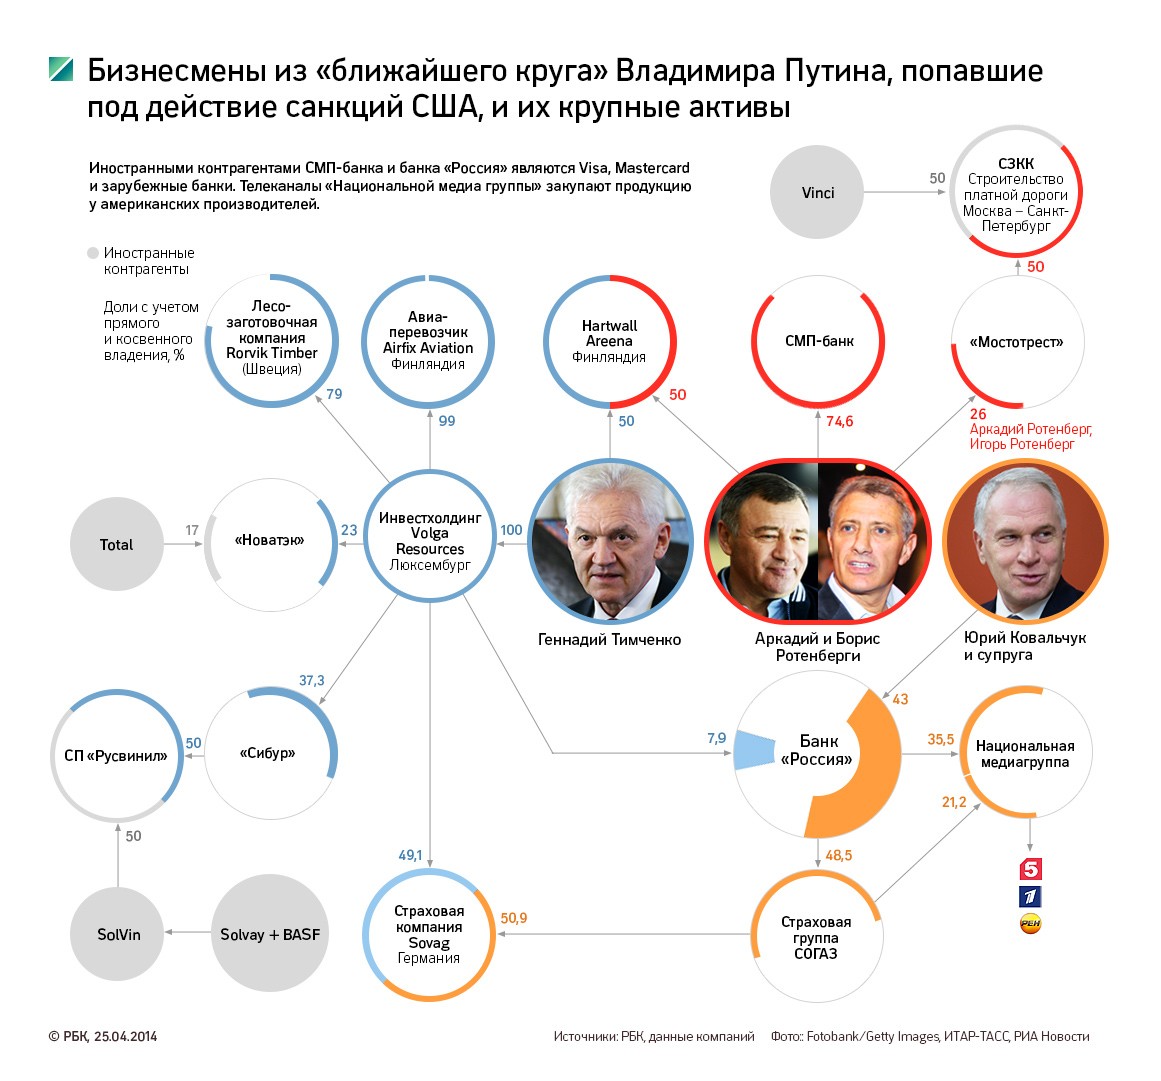 Тимченко перевел свои активы в российские банки